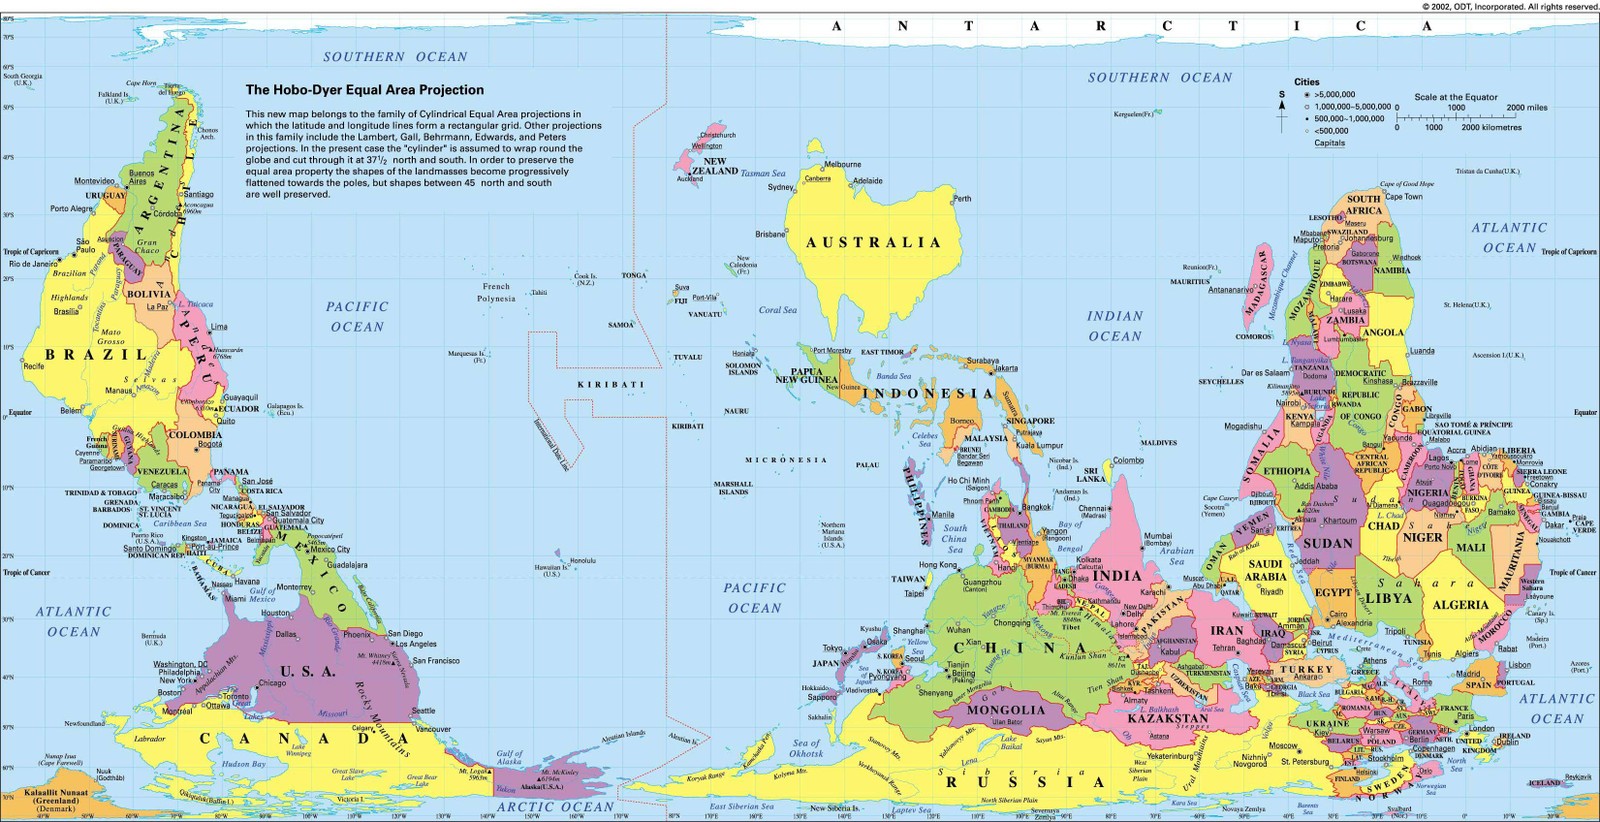 Austrália - mapa múndi do país da Oceania traz país no centro, com o Sul no topo no mapa — Foto: Reprodução